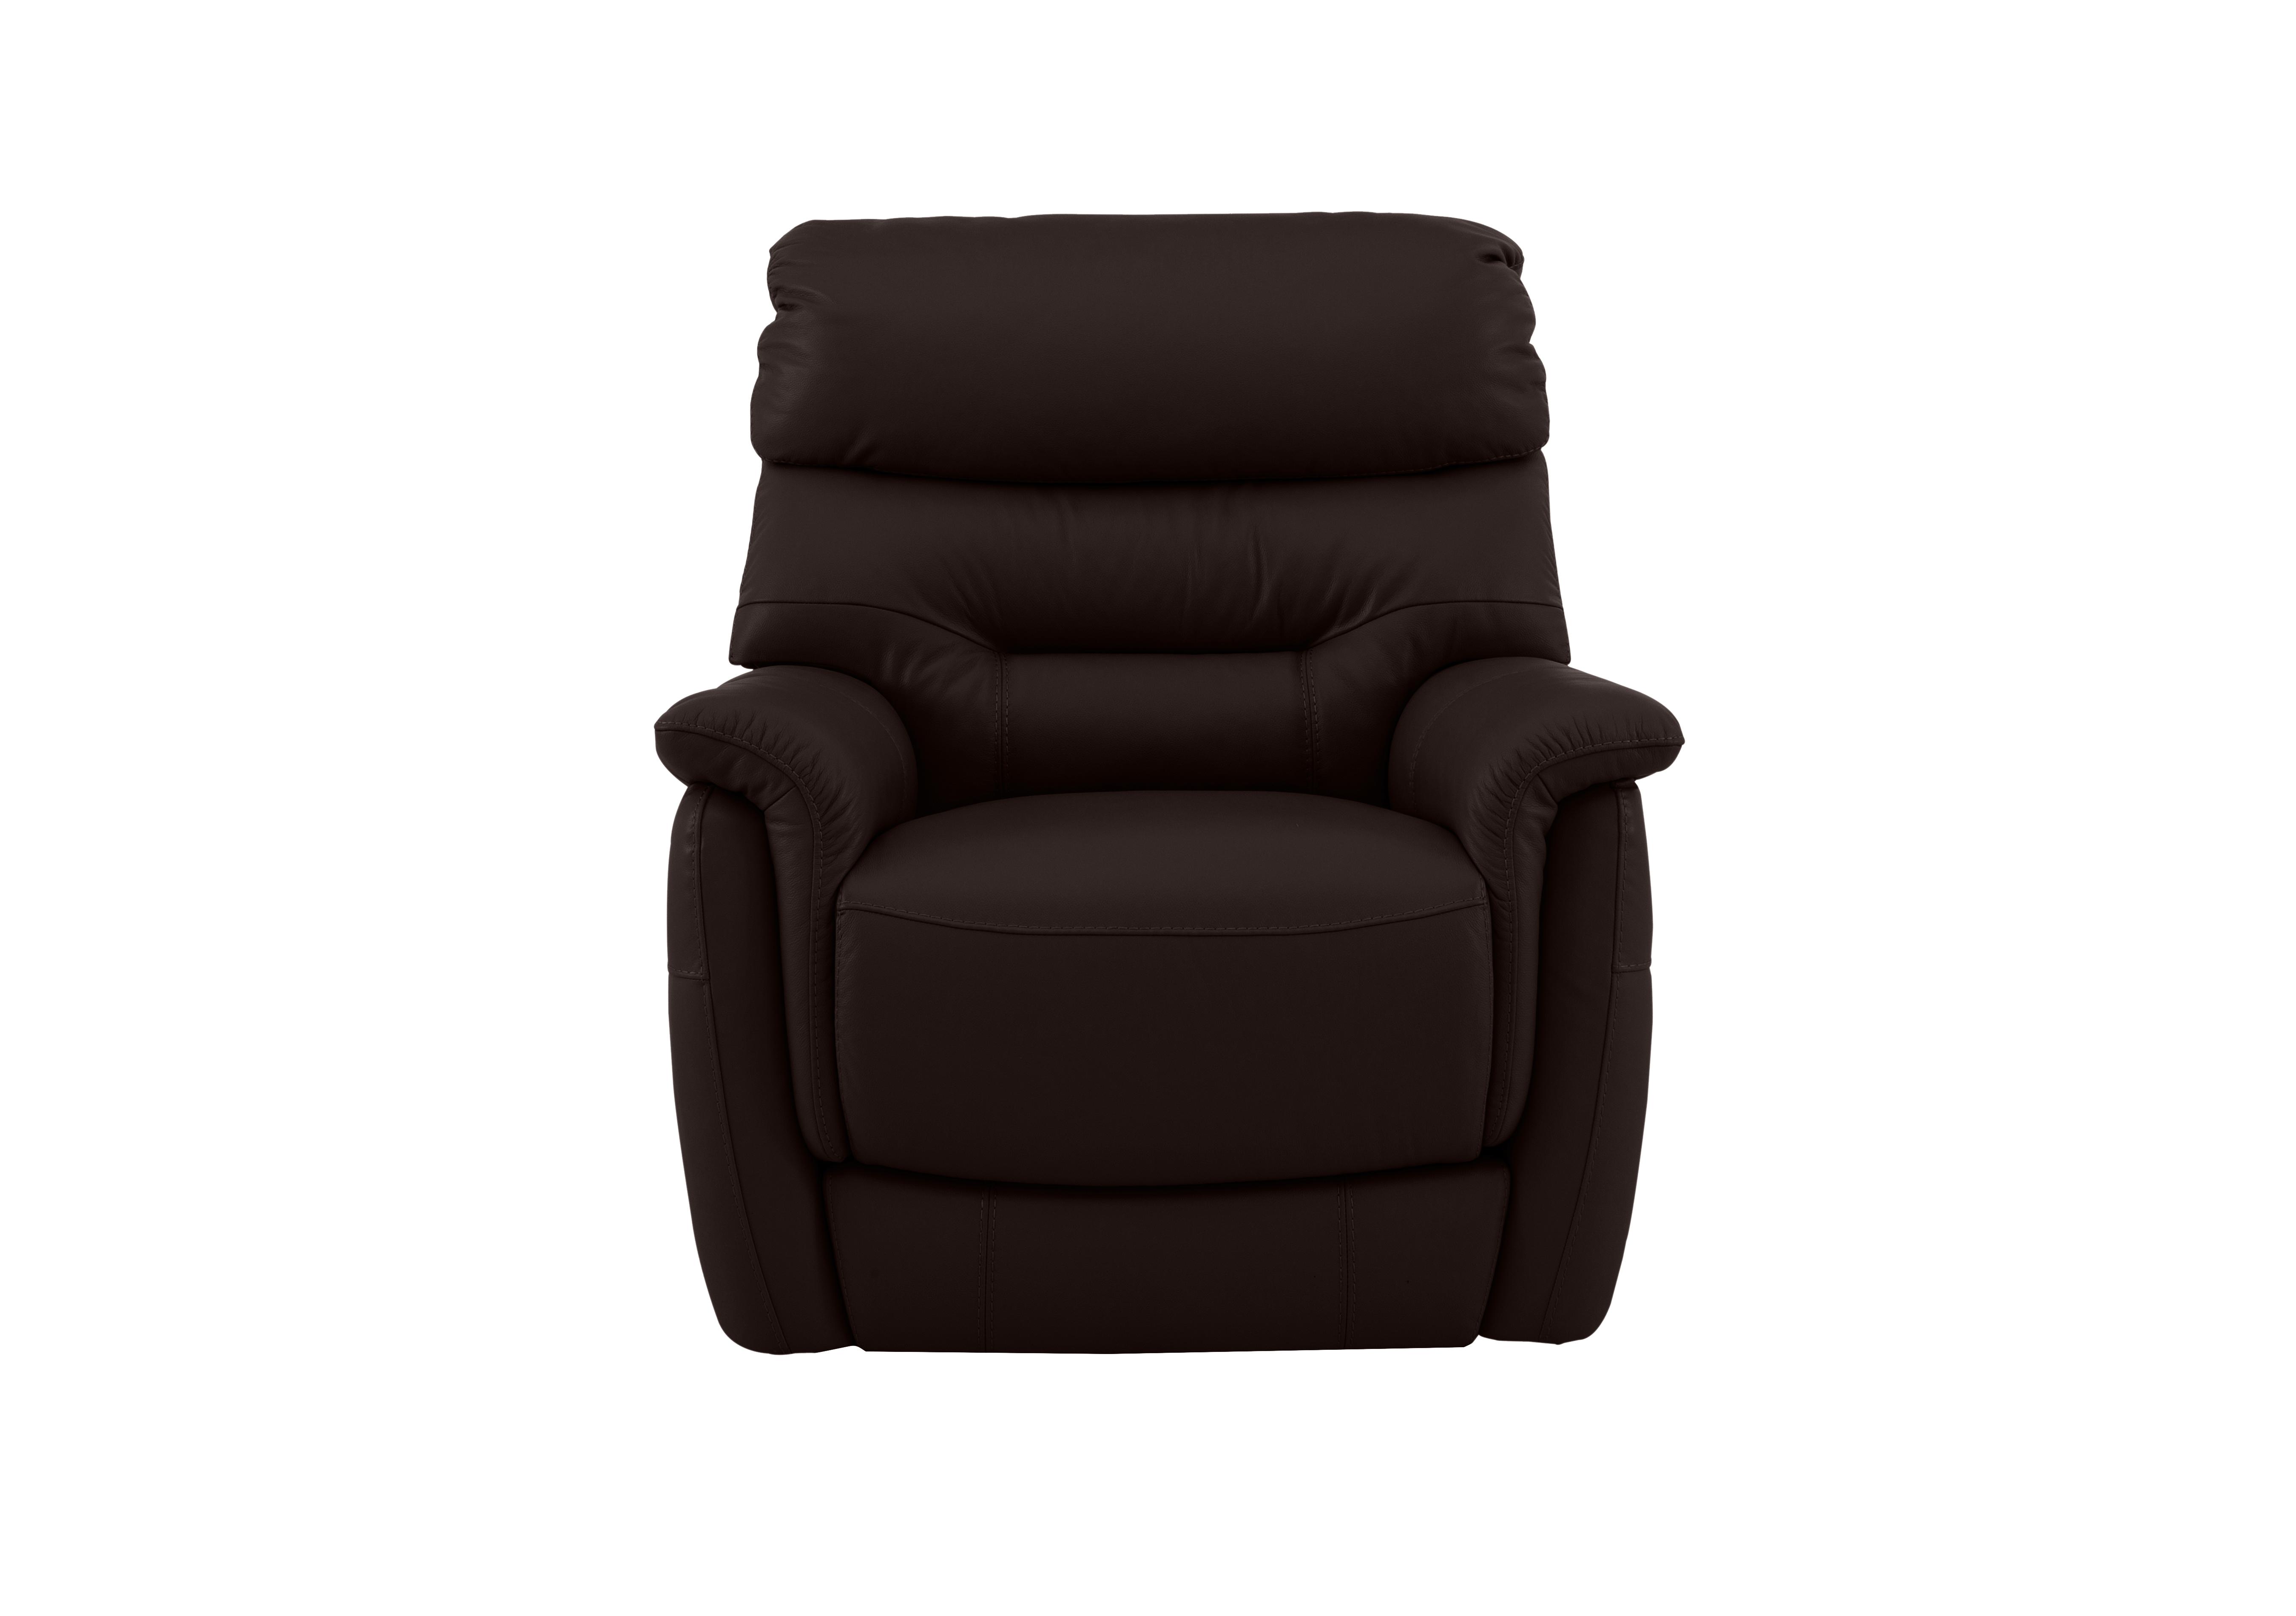 Chicago Leather Armchair in An-727b Dark Brown on Furniture Village